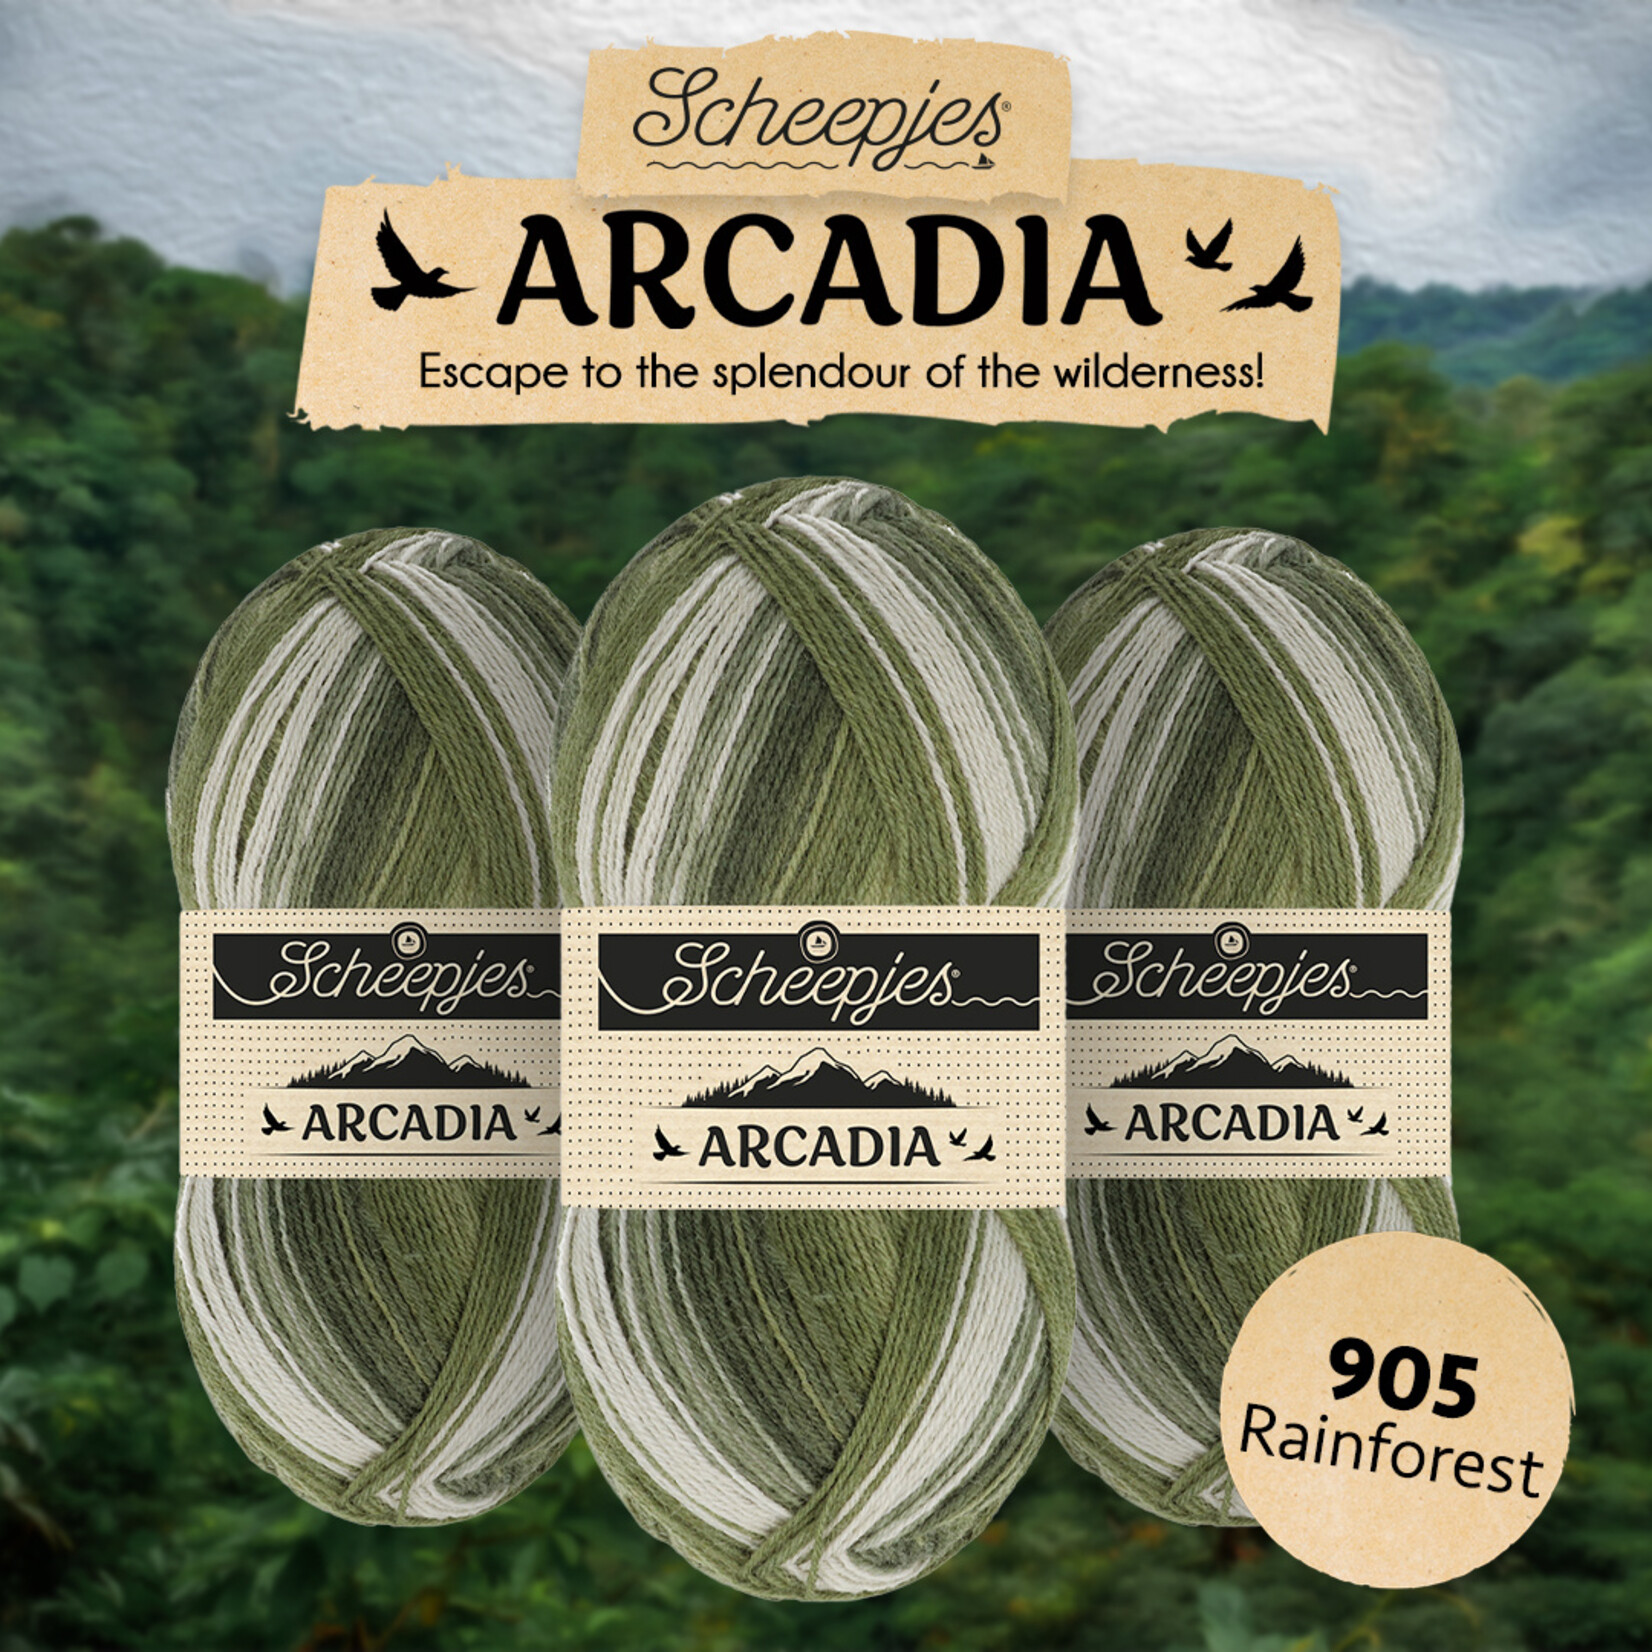 Scheepjes Arcadia 905 Rainforest